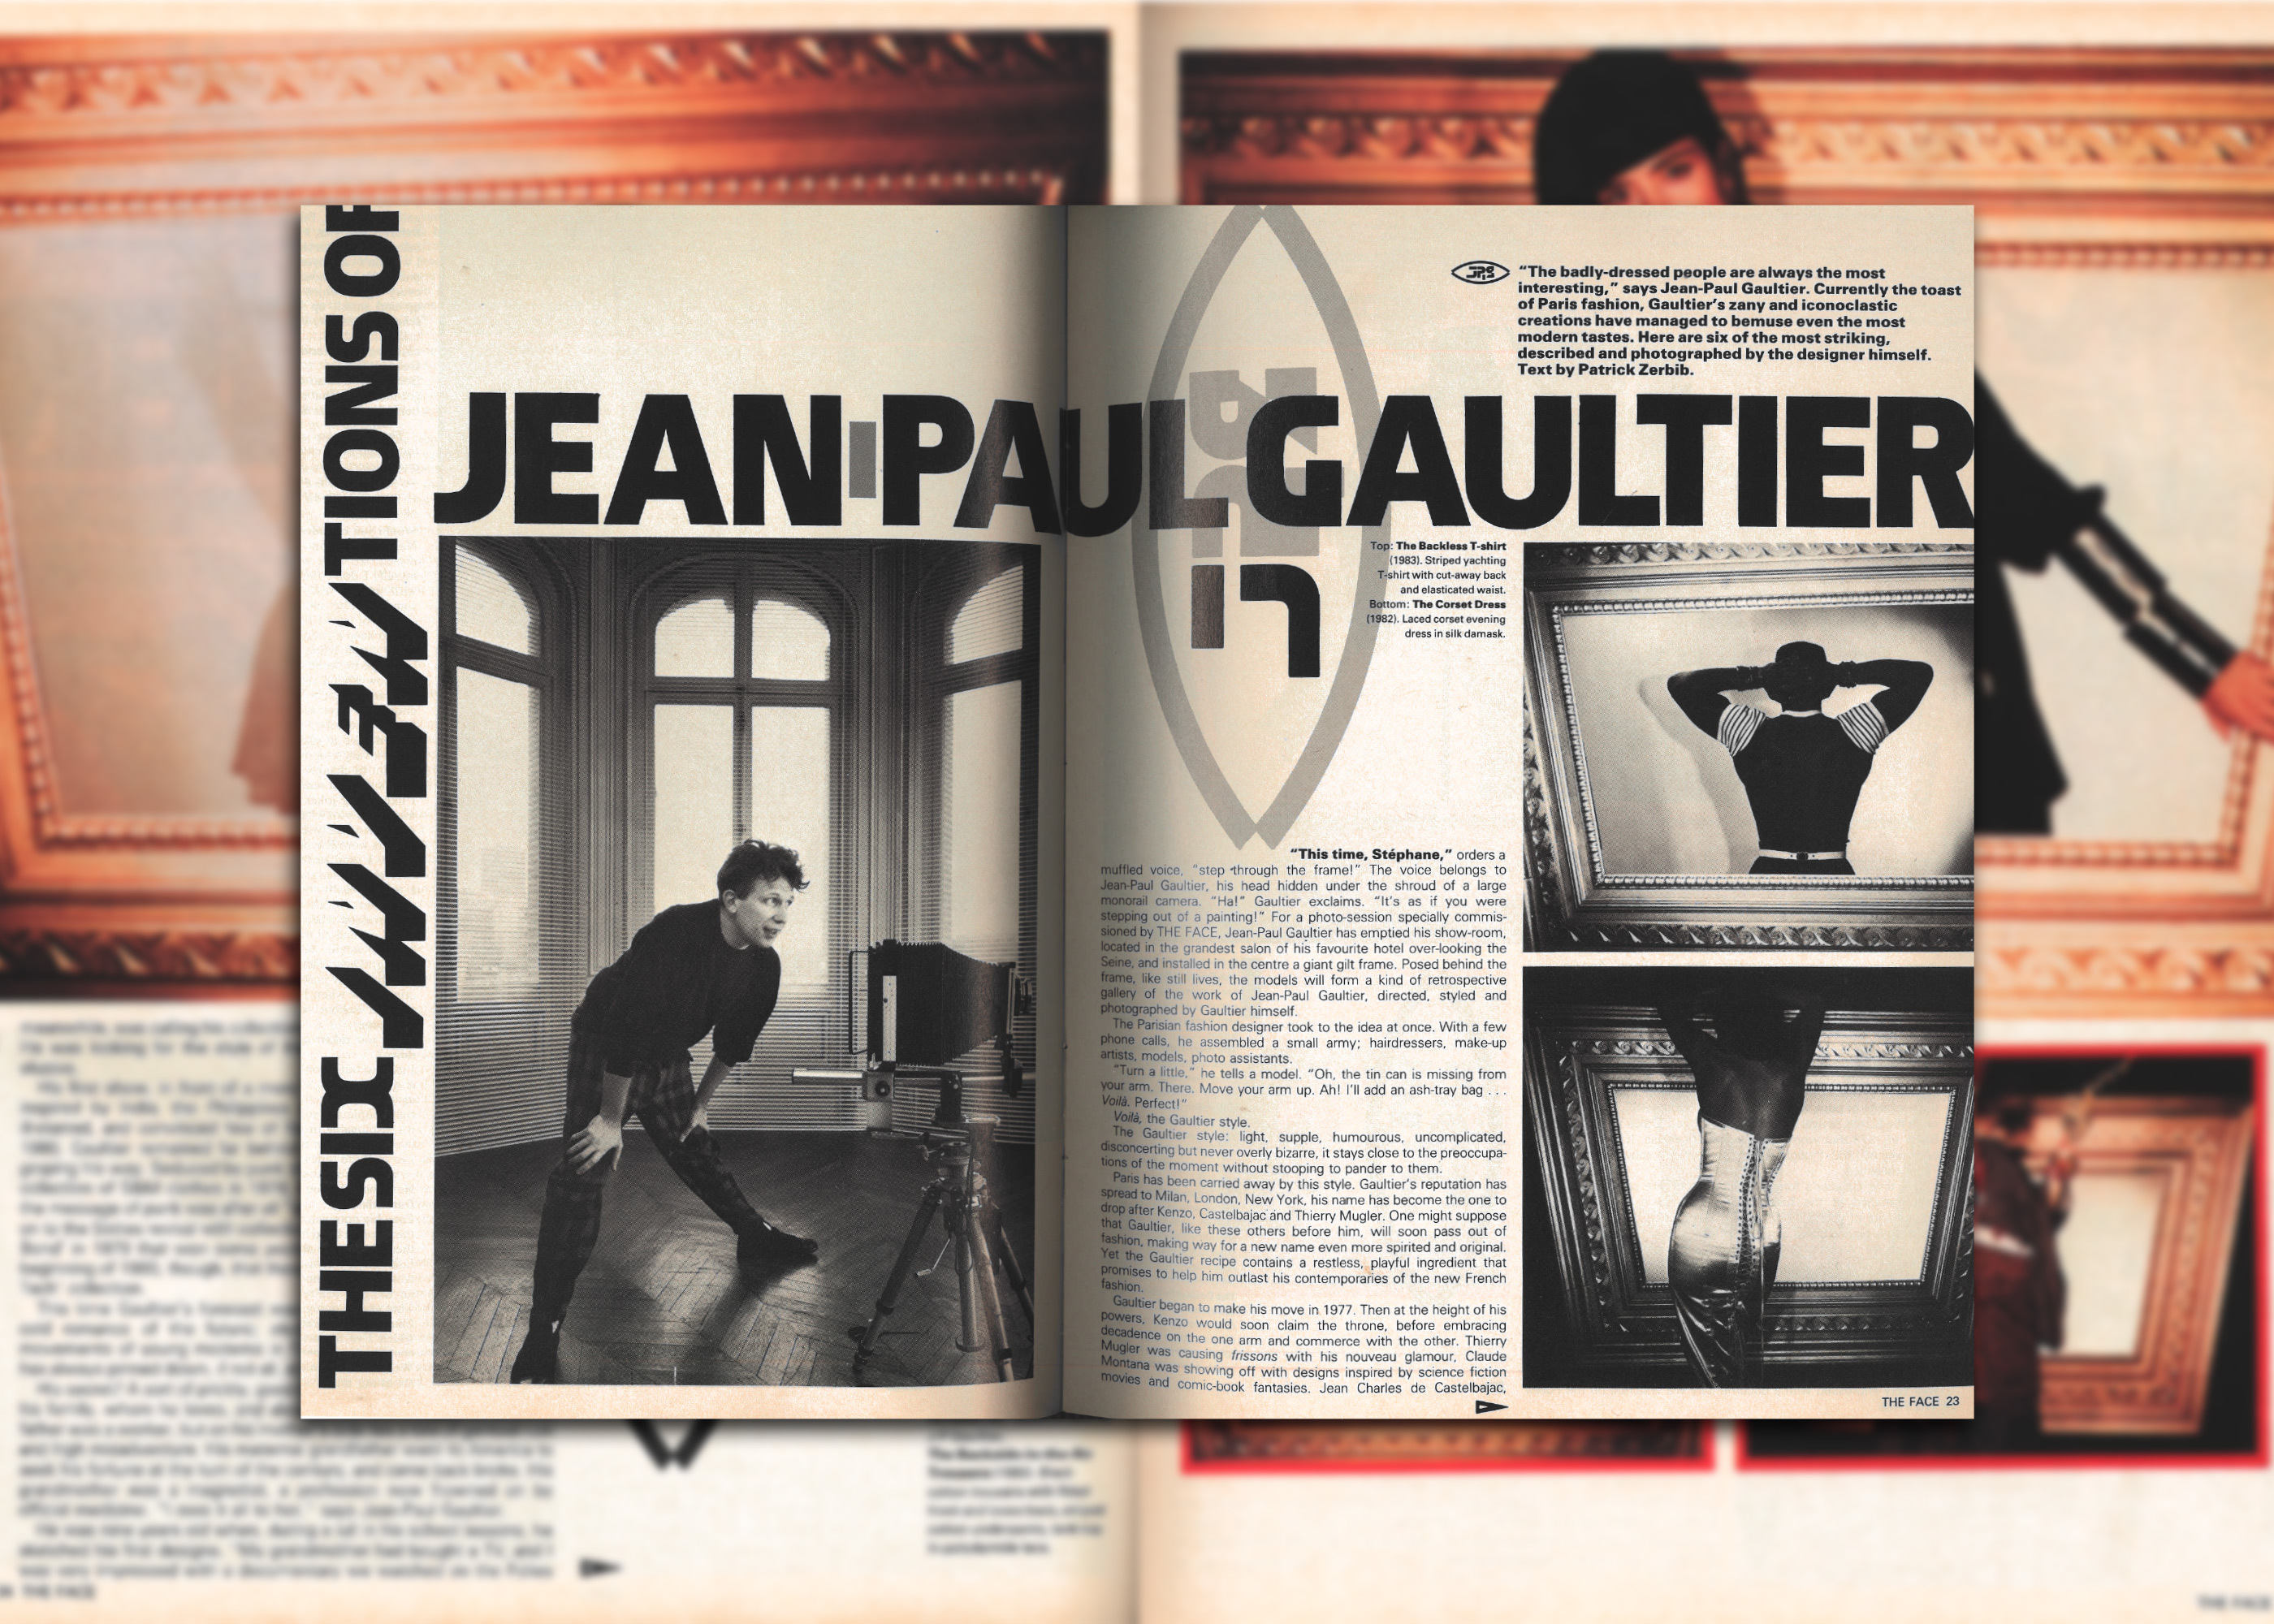 Menswear fans, listen up! Jean Paul Gaultier has opened his entire